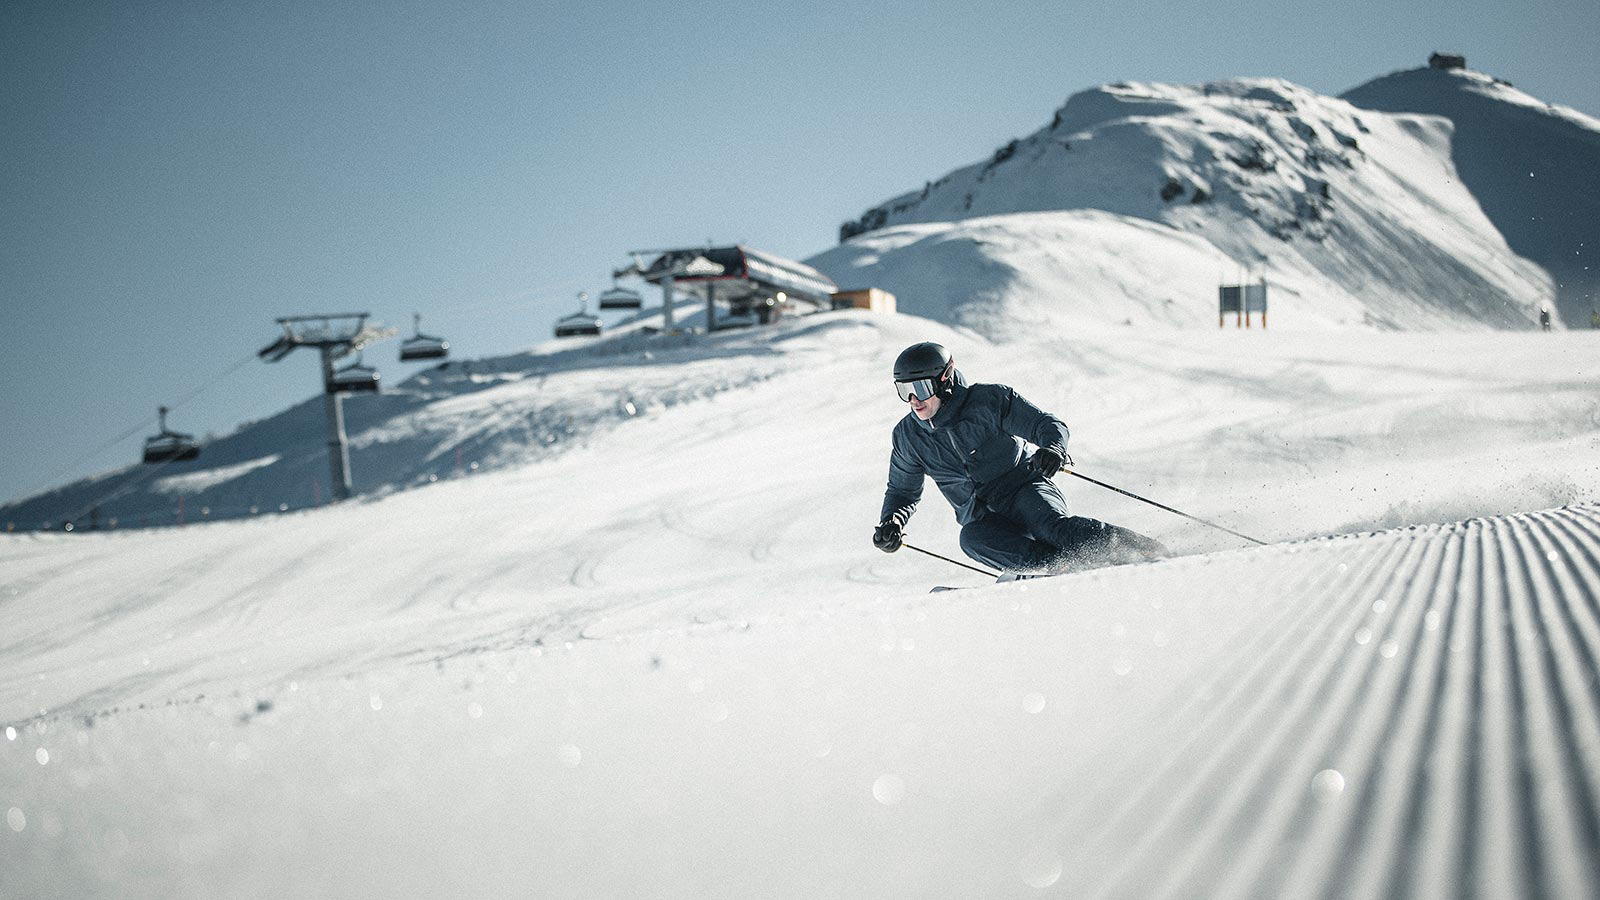 Uno sciatore è intento a fare degli slalom in discesa su una pista nevosa.